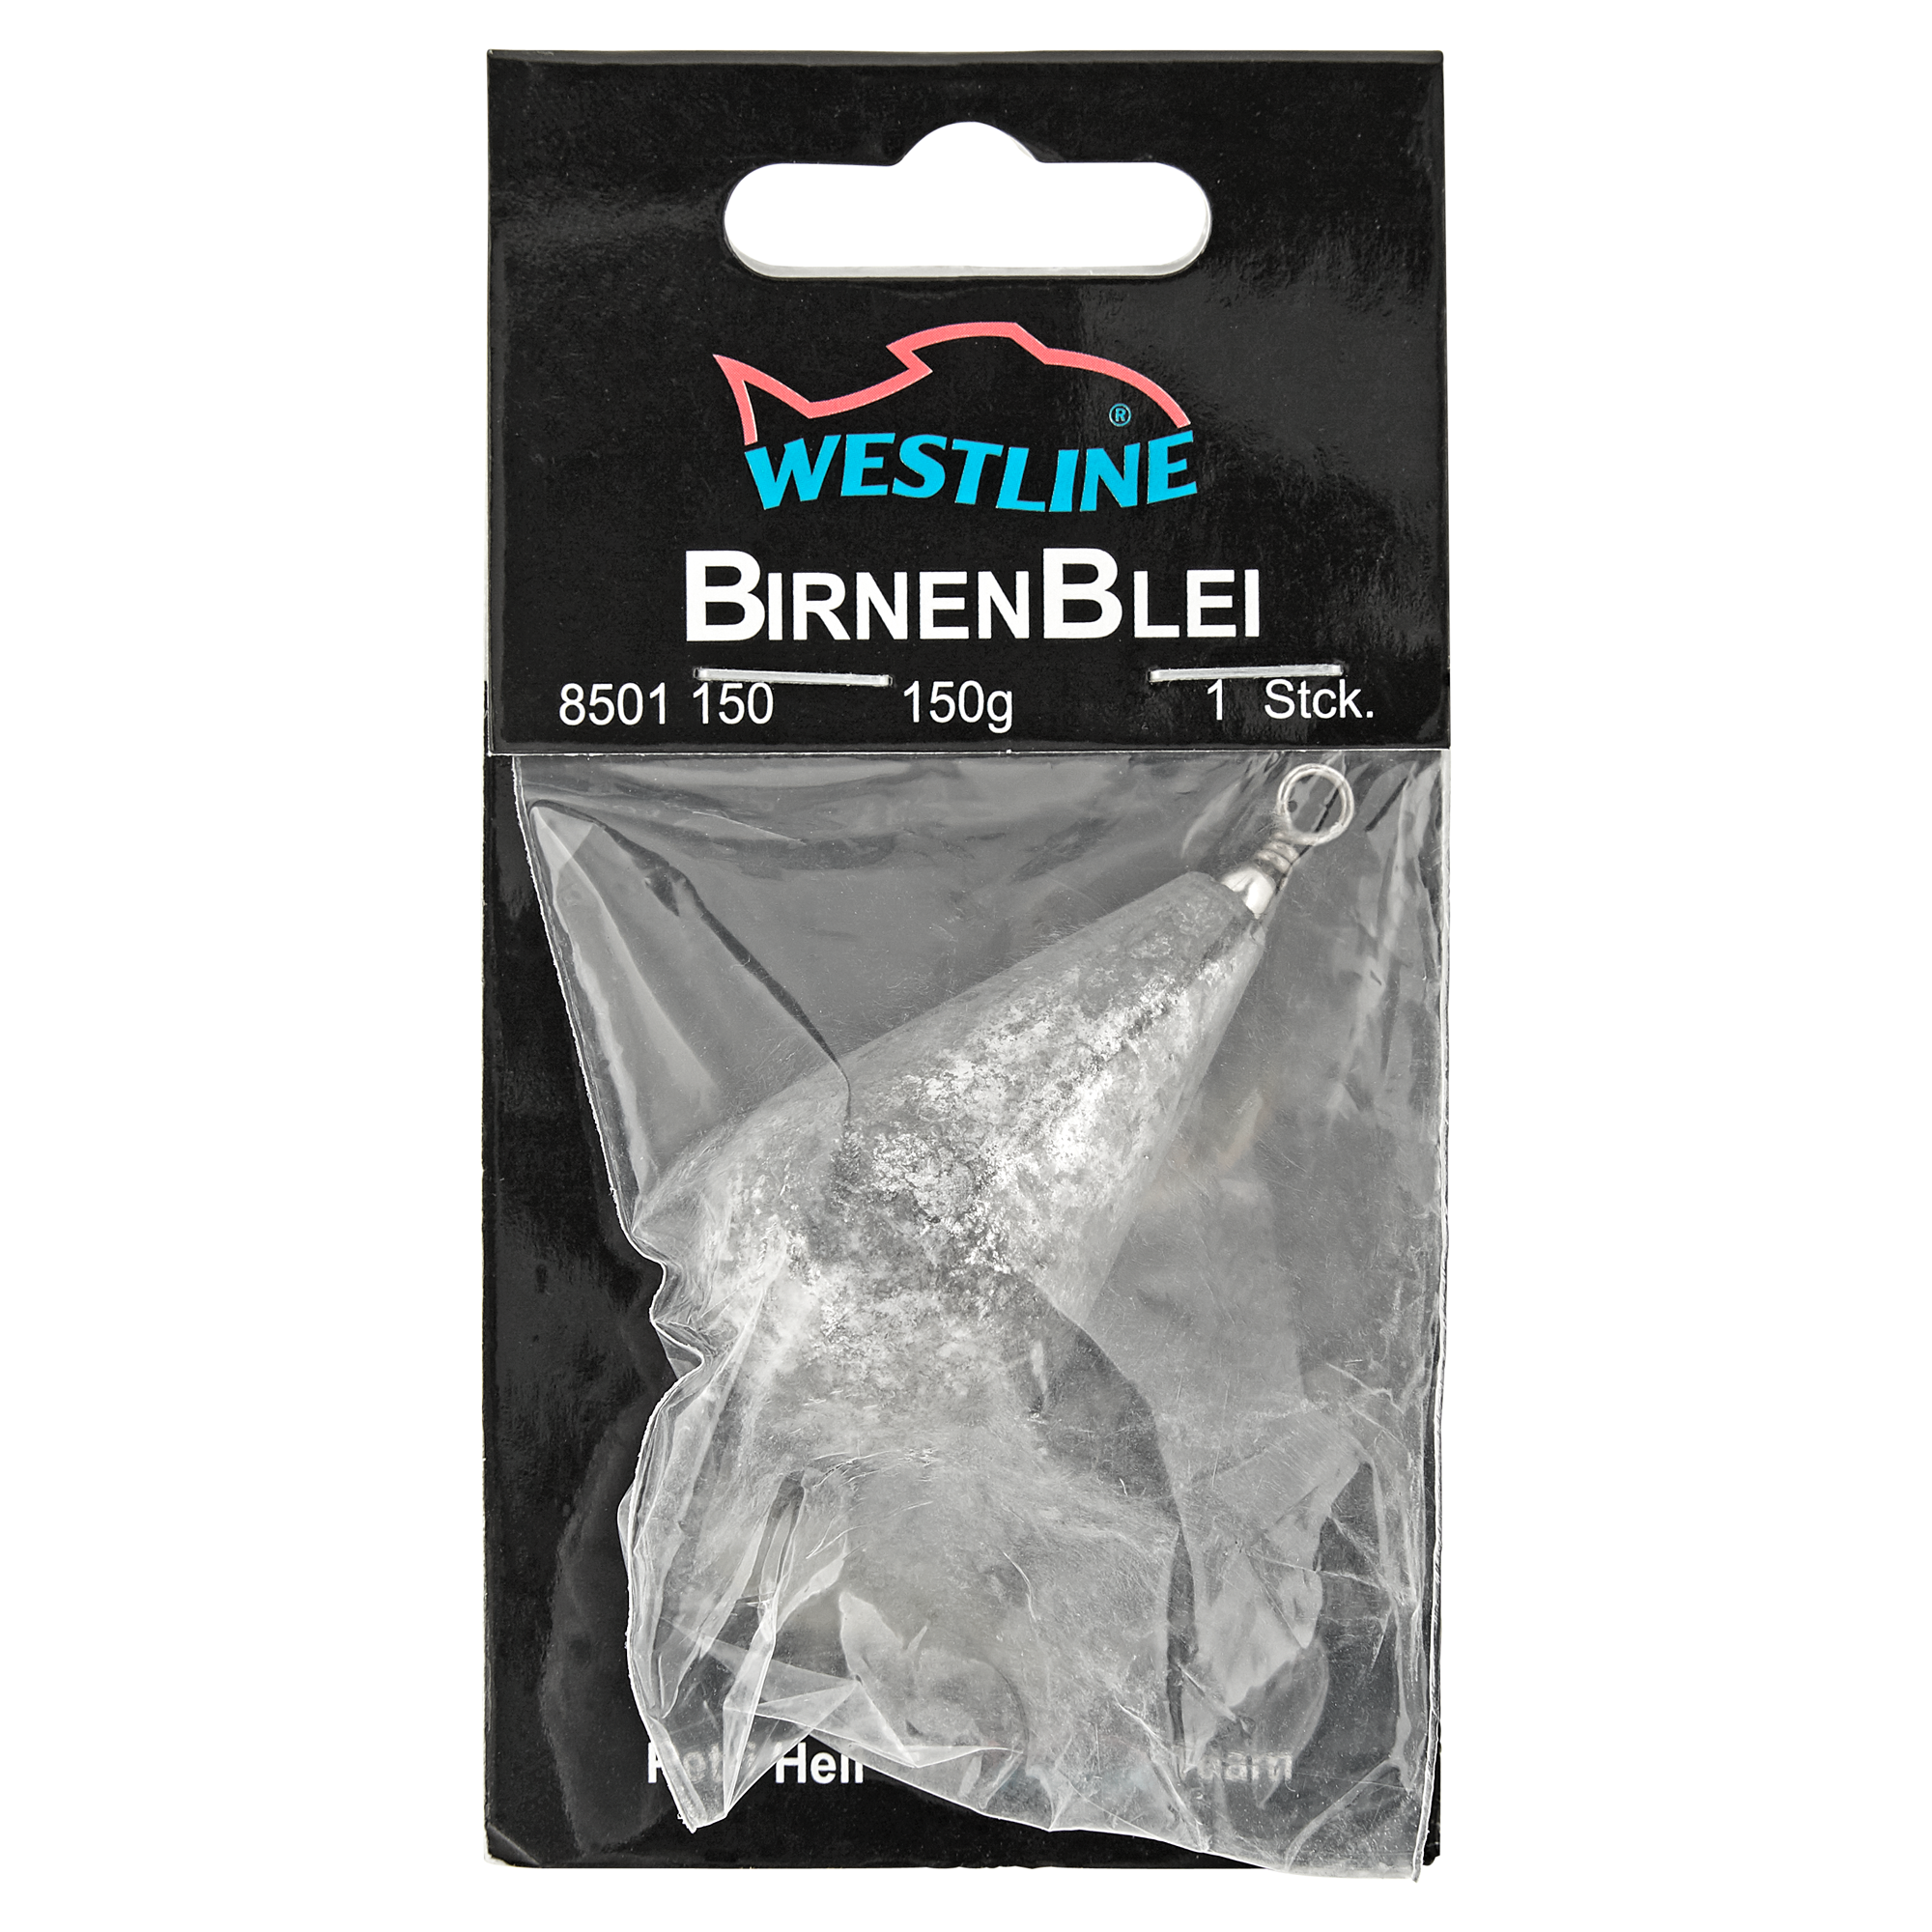 Birnenblei mit Wirbel 150 g + product picture